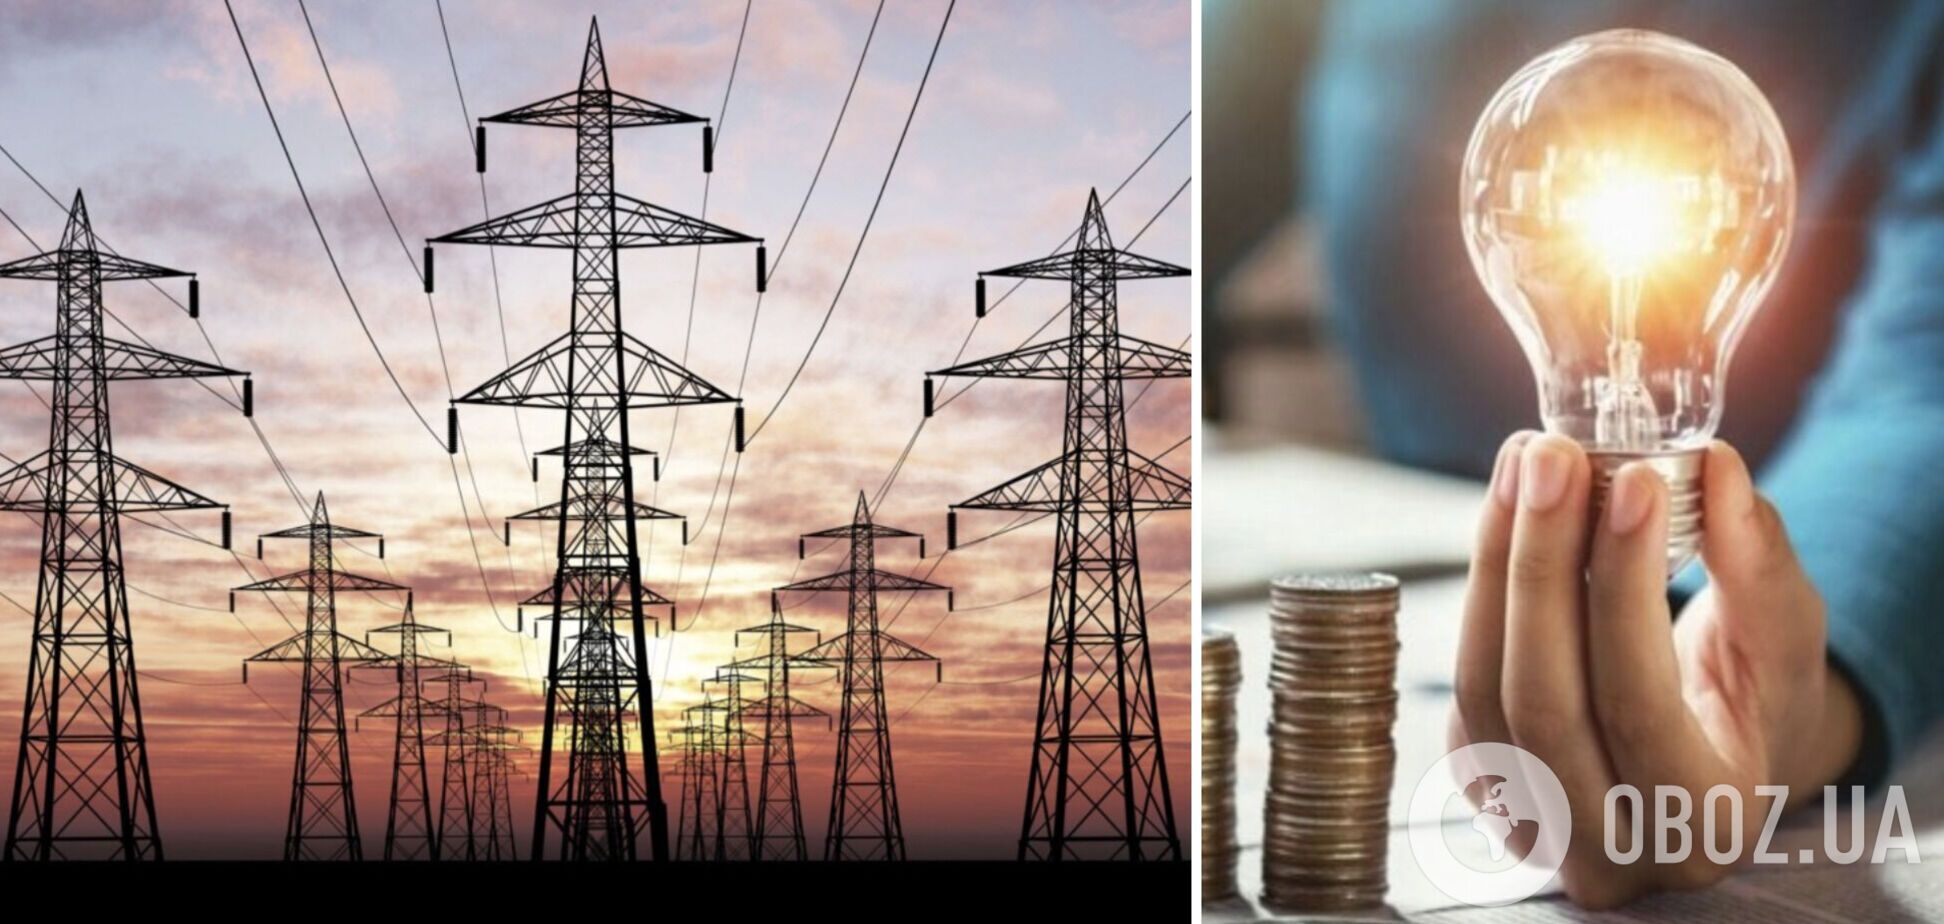 Ціни на електроенергію в Східній Європі у 2 рази вищі, ніж в Україні – ДП 'Оператор ринку'